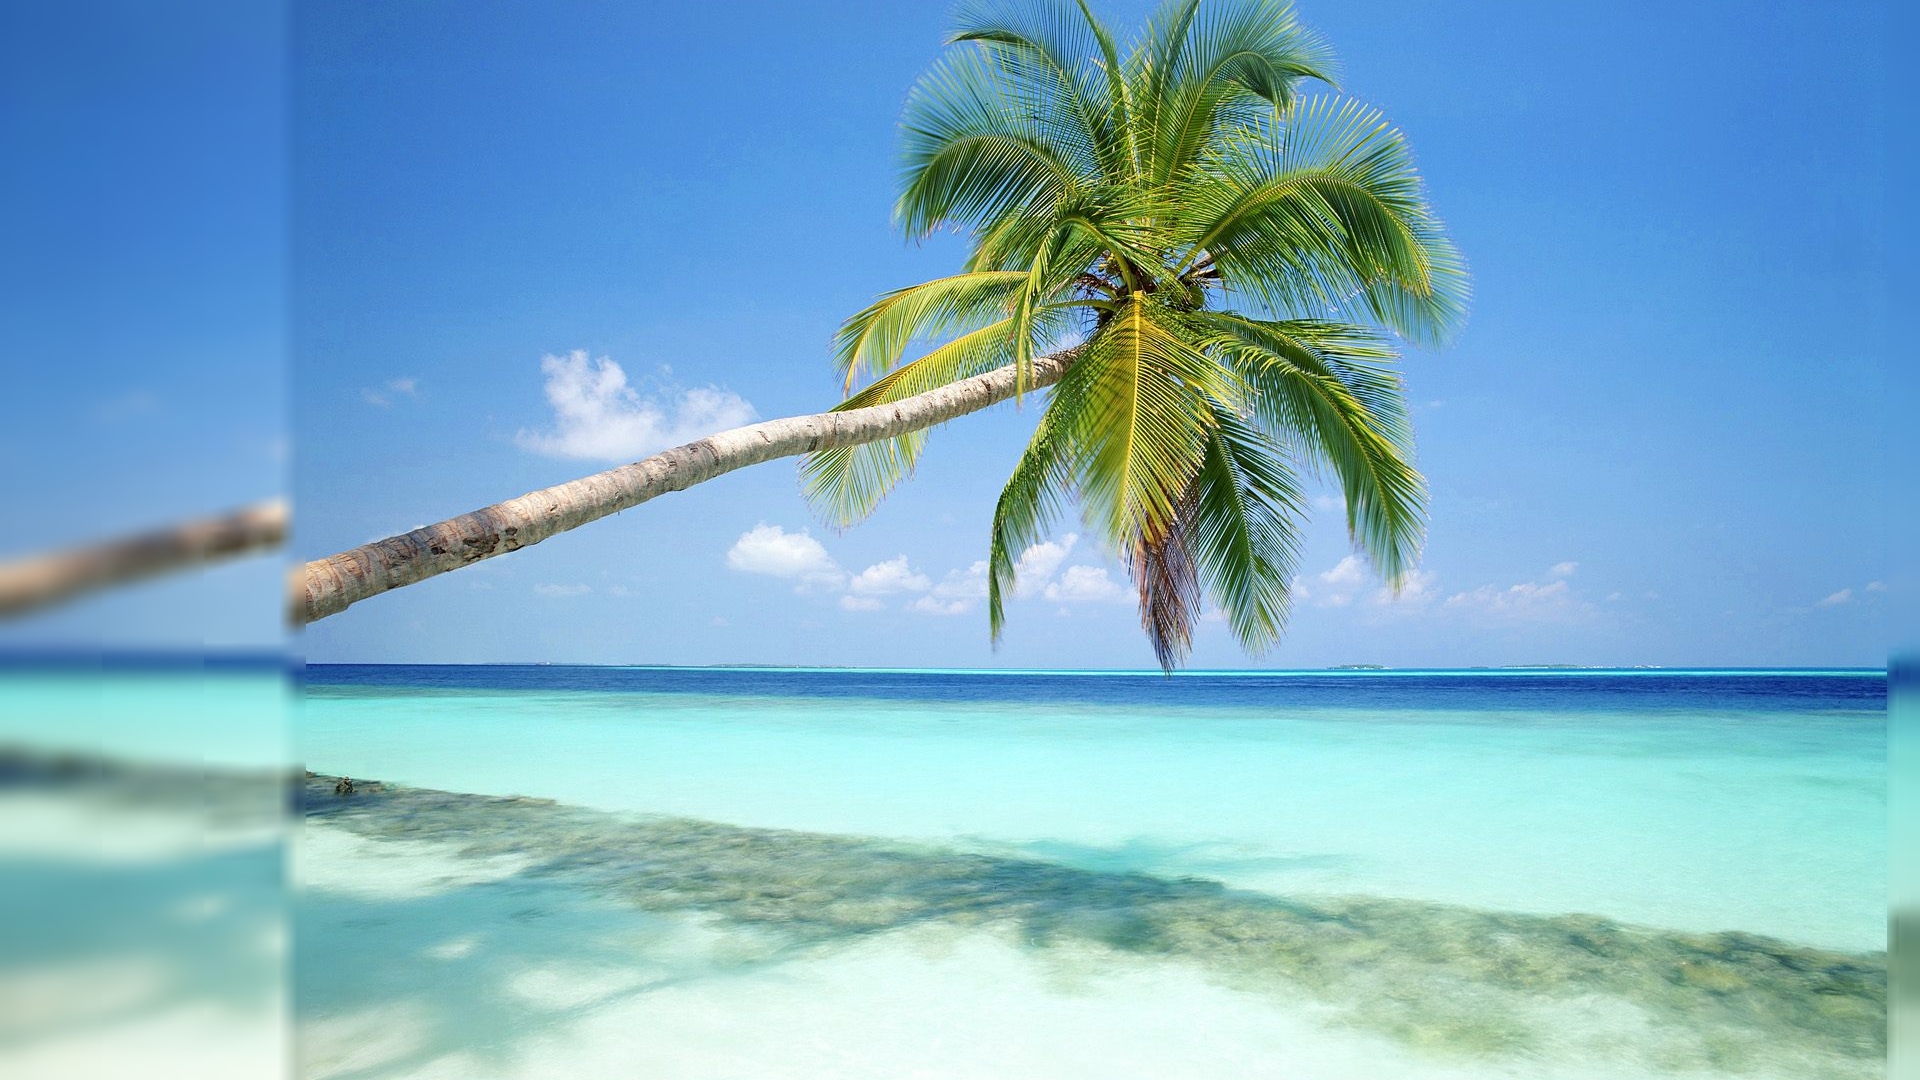 Free Download Summer Beach Scenes Desktop Wallpaper 1920x1200 For